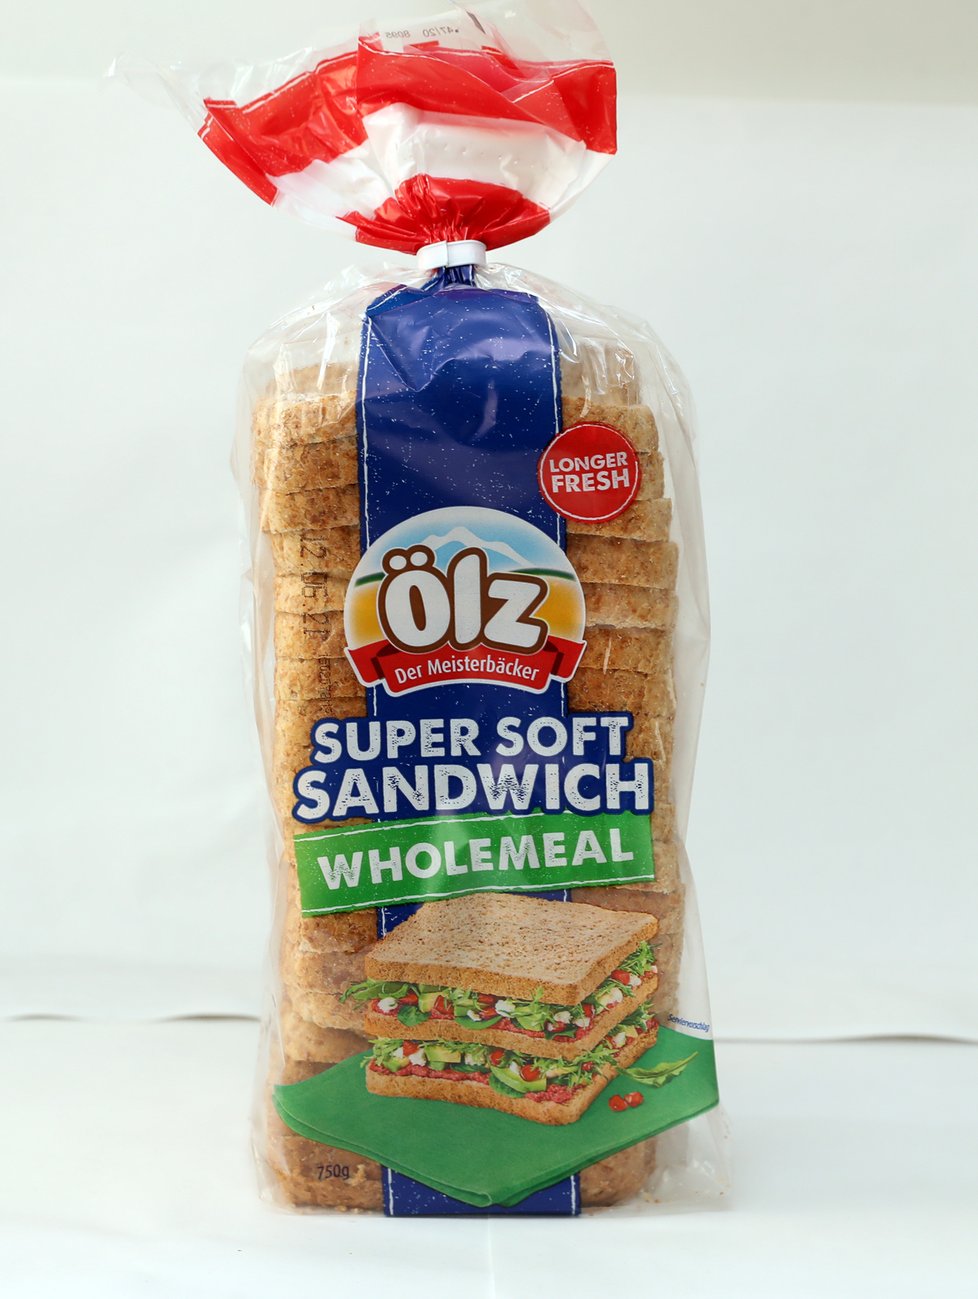 Blesk nechal v laboratoři otestovat celozrnné toustové chleby. Jak výrobky ve spotřebitelském testu uspěly?